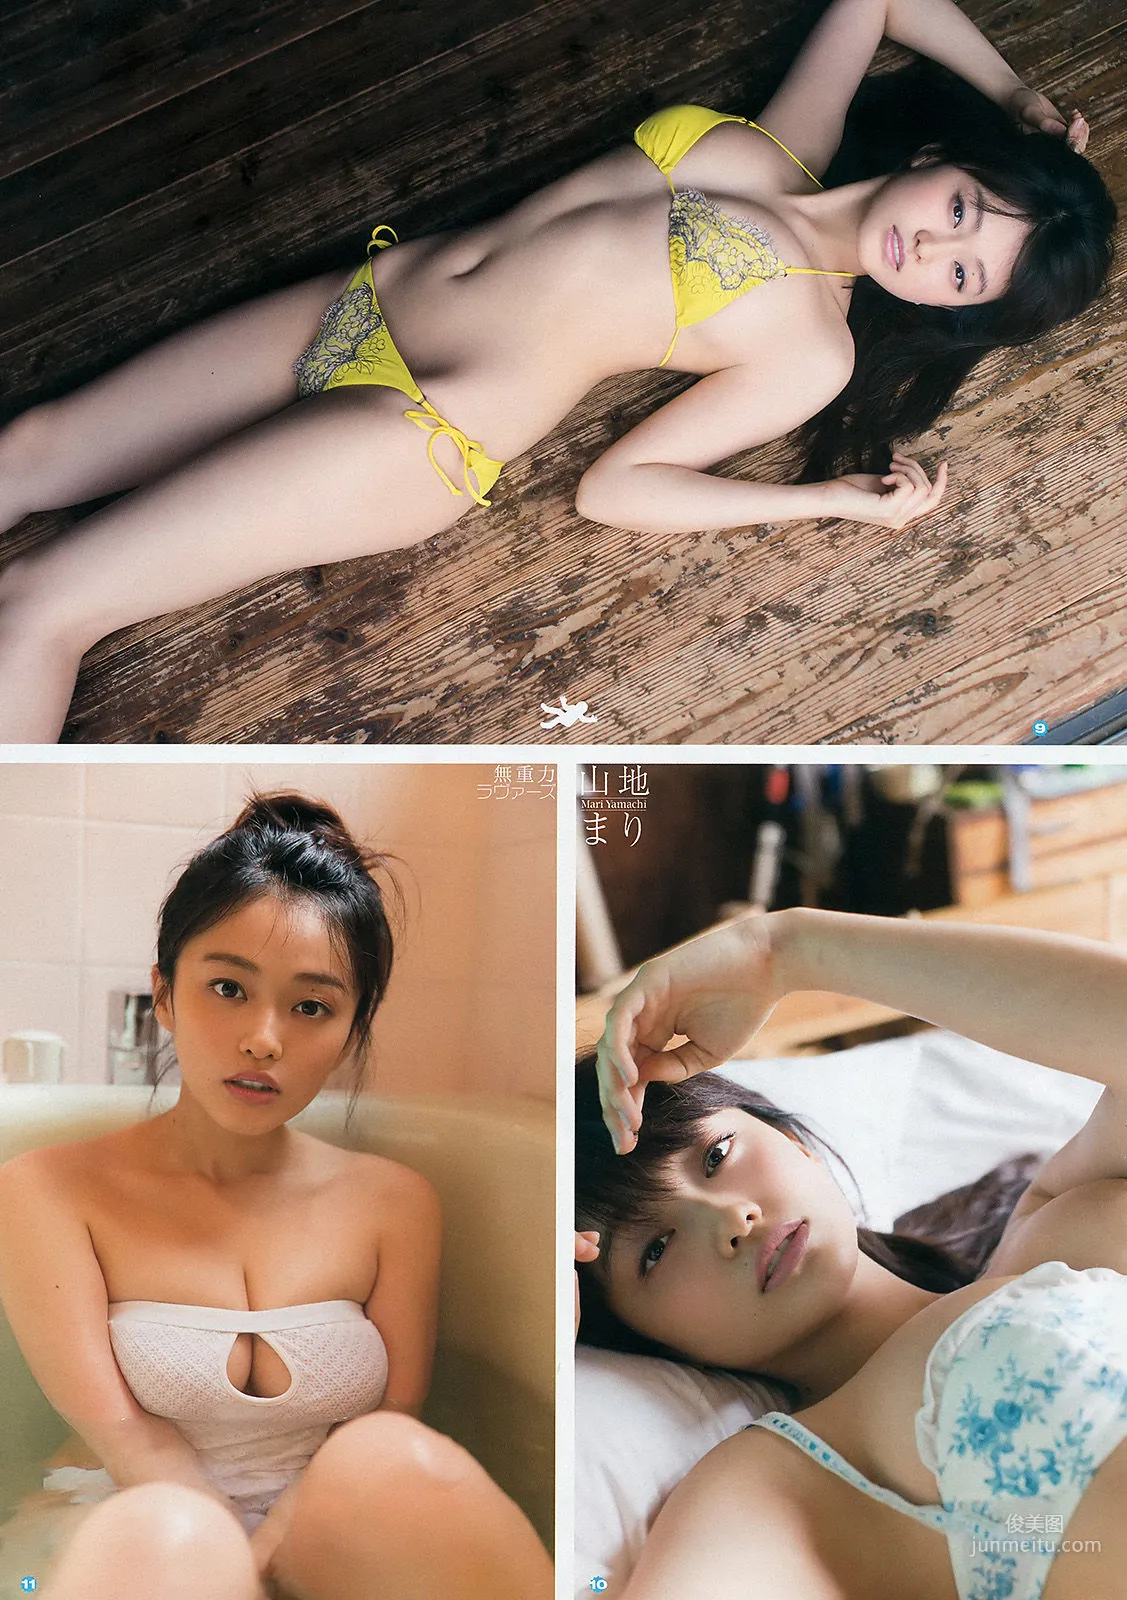 [Young Gangan] 山地まり 平祐奈 2015年No.14 写真杂志8